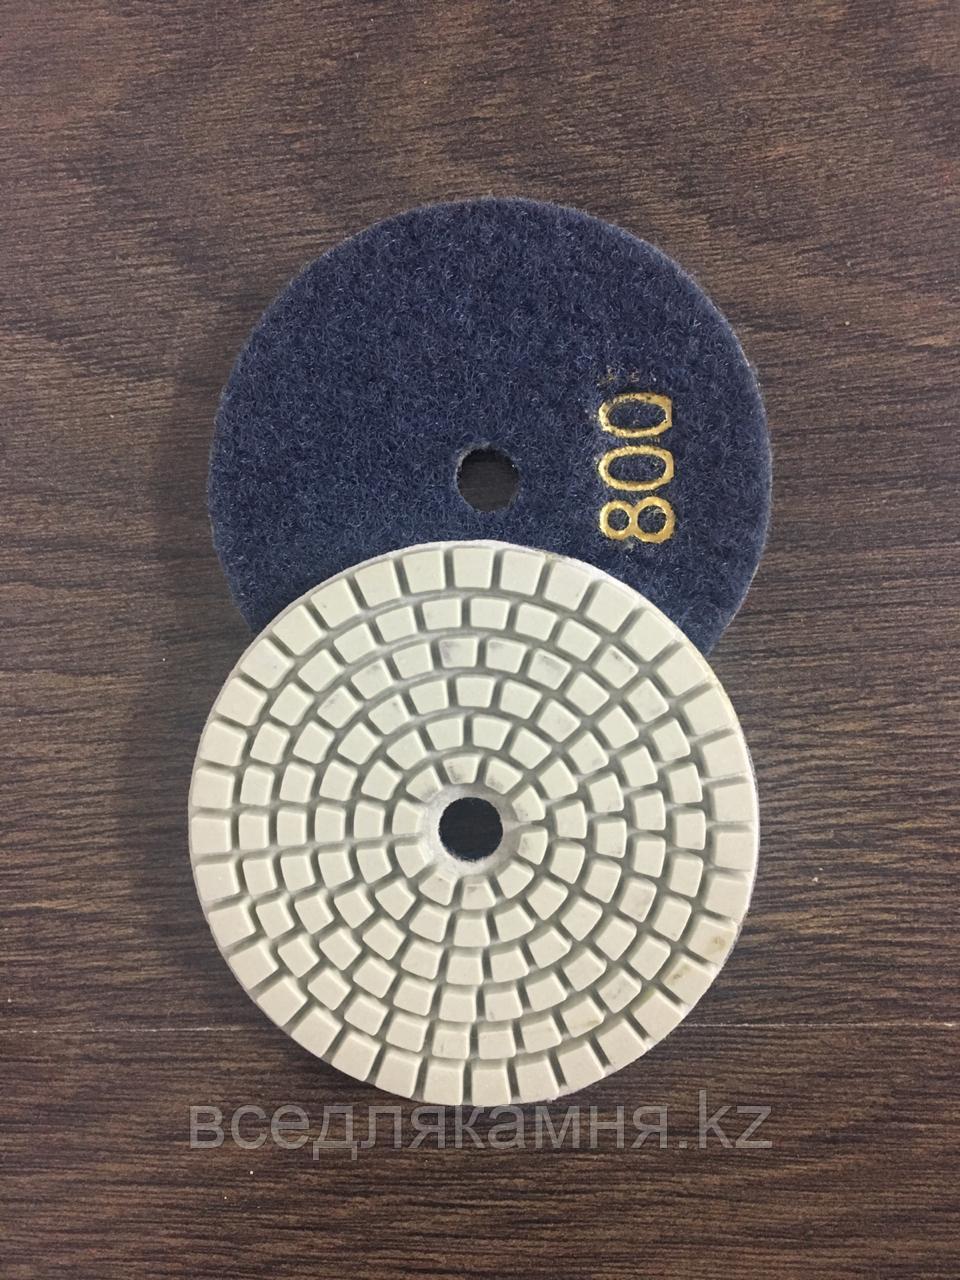 Алмазный гибкий шлифовальный круг ( АГШК ) № 800